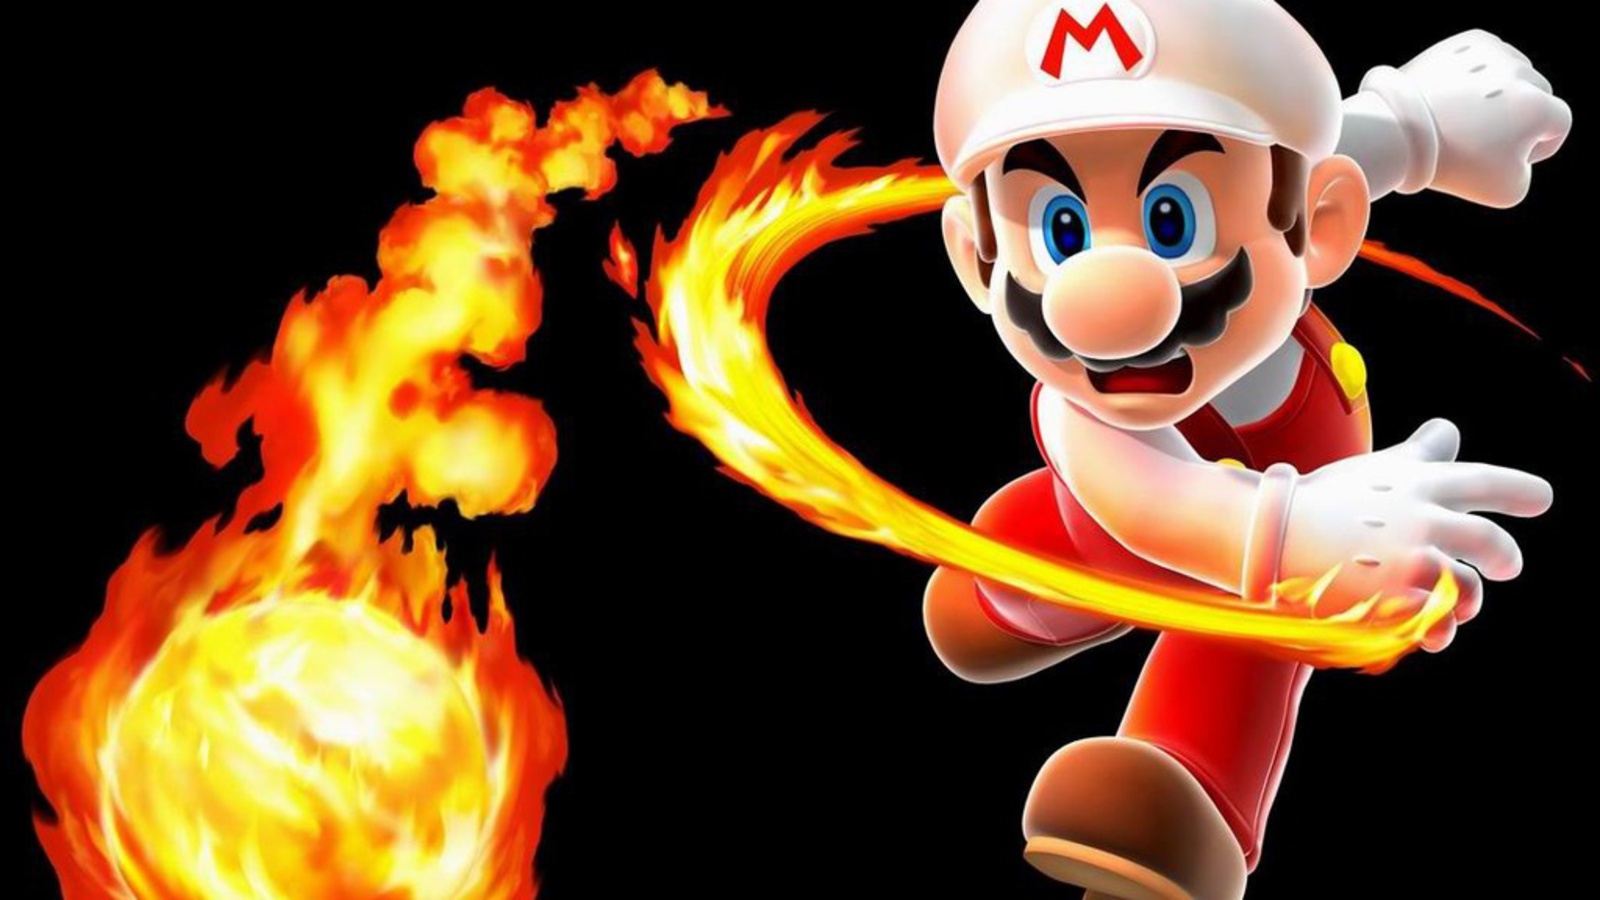 Mario Fireball Wallpaper - Fire Power Real Life , HD Wallpaper & Backgrounds